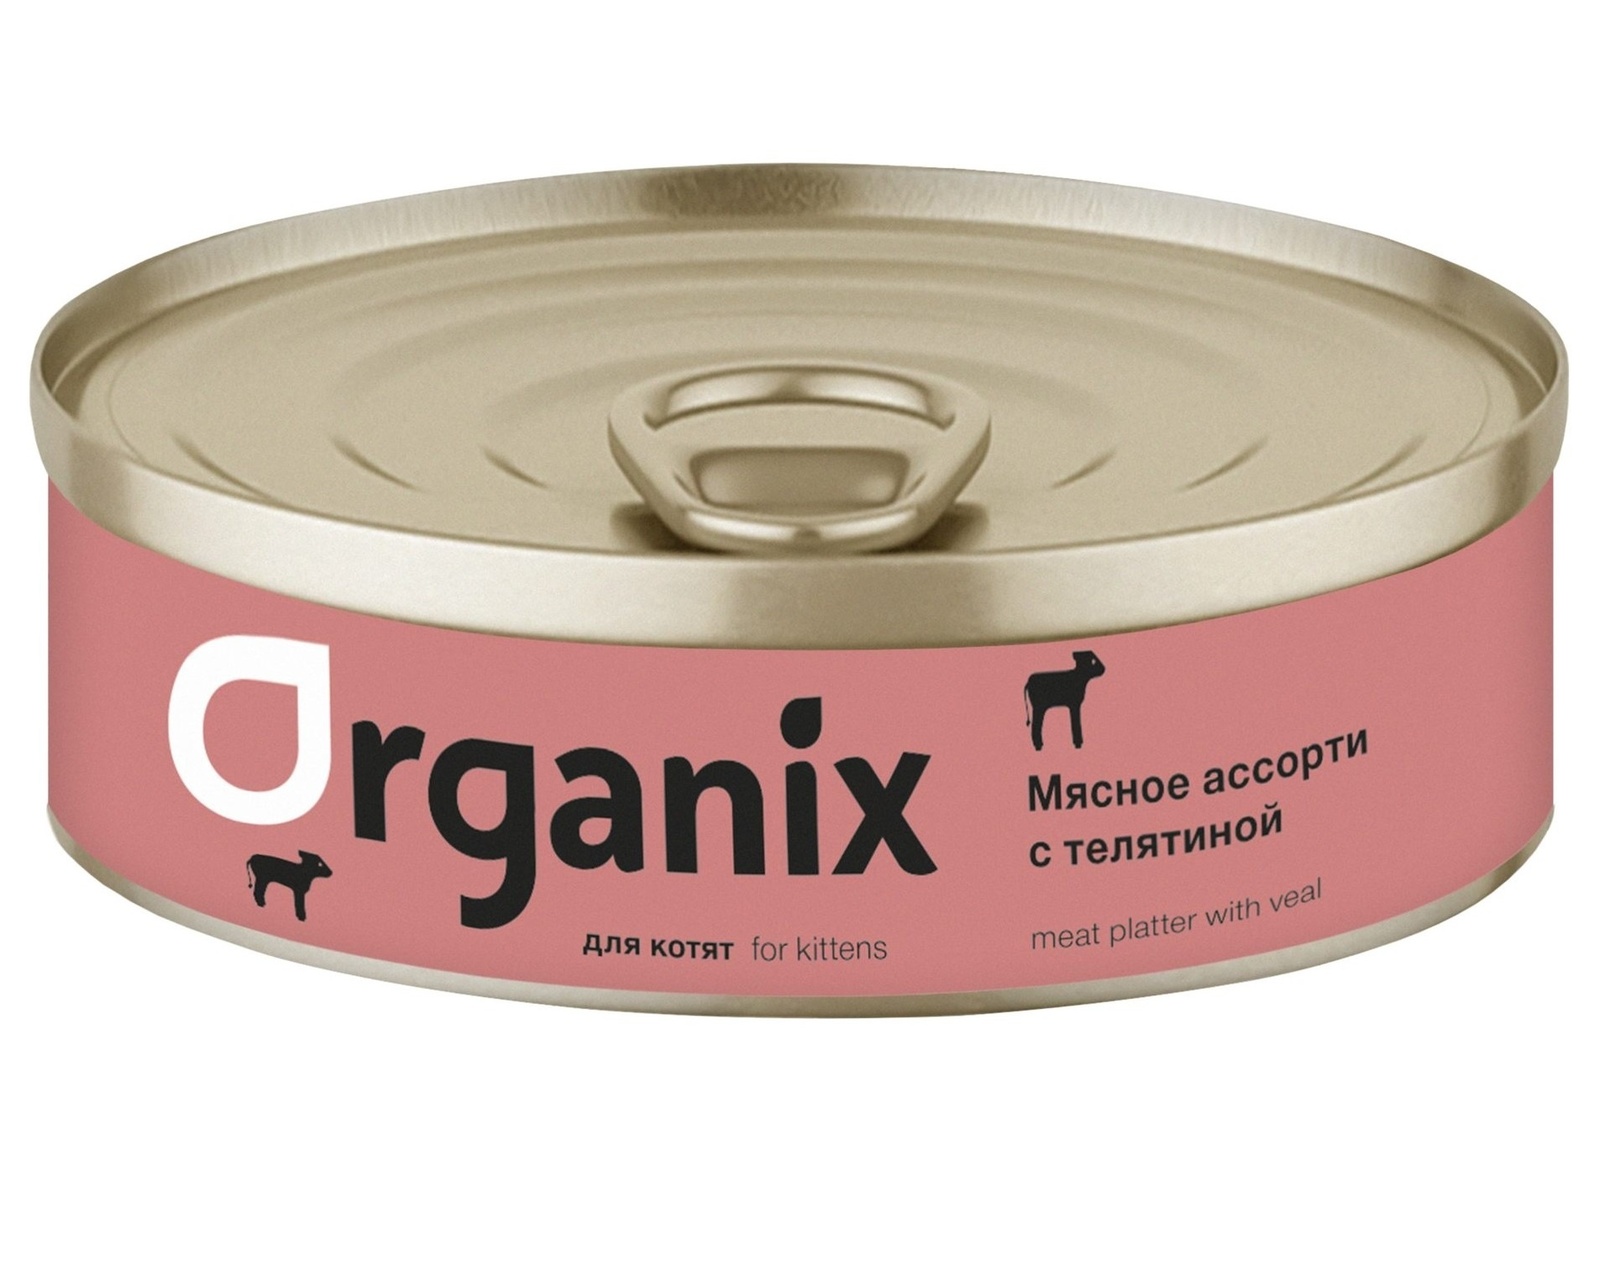 Organix консервы для котят 